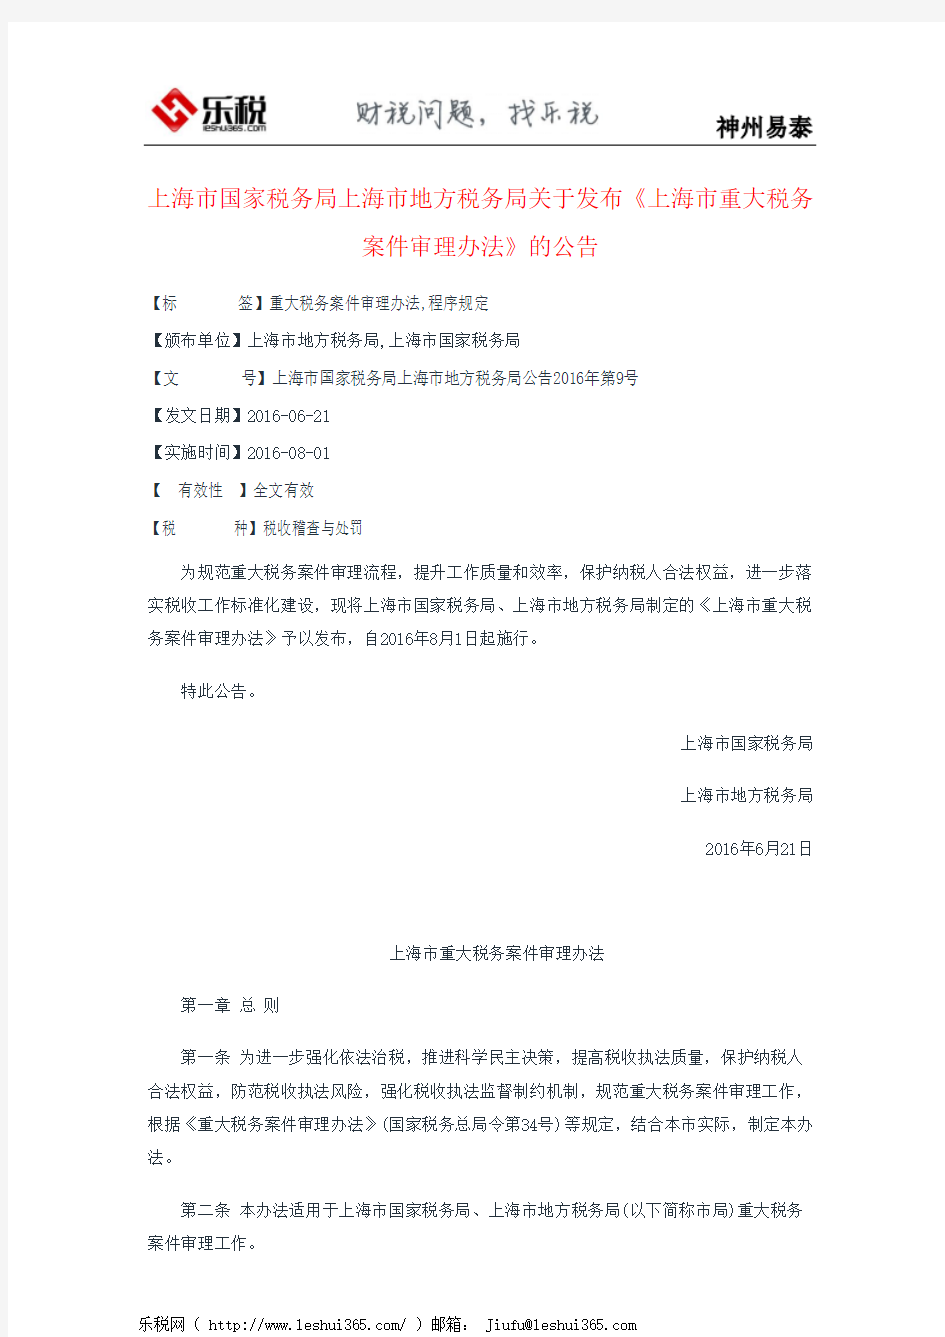 上海市国家税务局上海市地方税务局关于发布《上海市重大税务案件